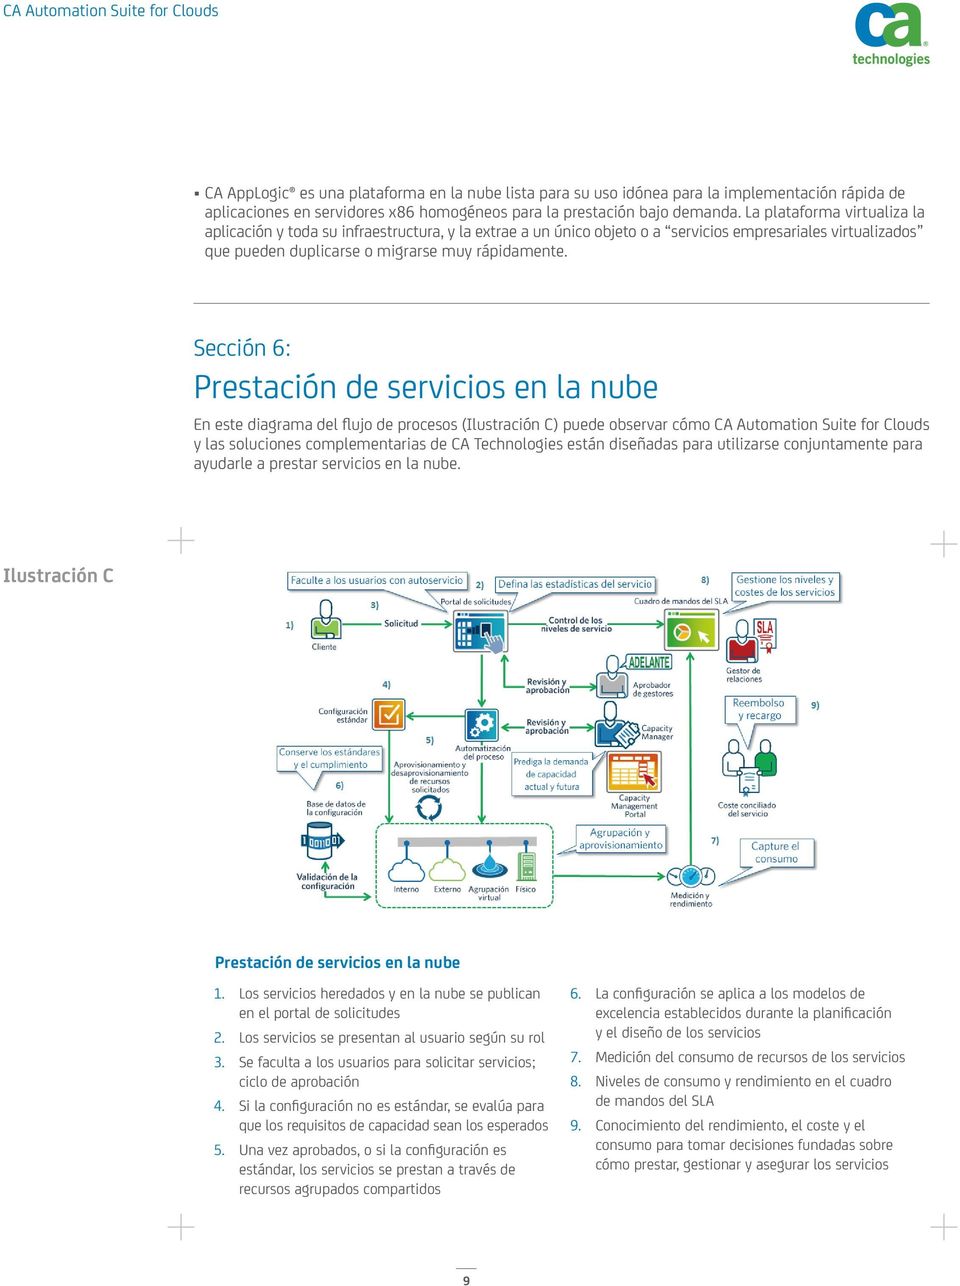 Sección 6: Prestación de servicios en la nube En este diagrama del flujo de procesos (Ilustración C) puede observar cómo CA Automation Suite for Clouds y las soluciones complementarias de CA